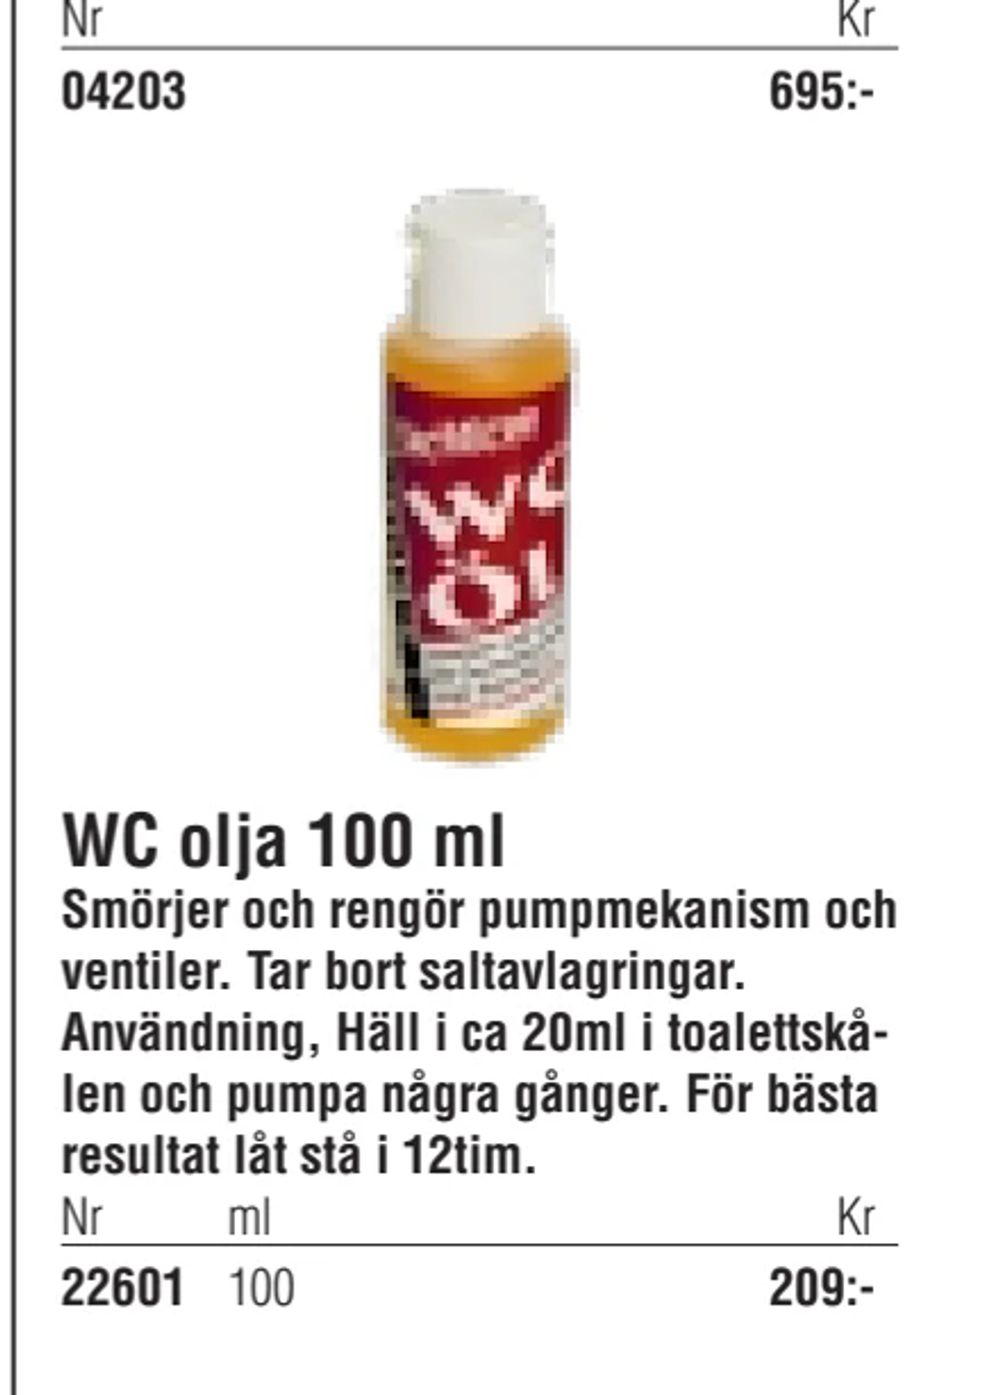 Erbjudanden på WC olja 100 ml från Erlandsons Brygga för 209 kr